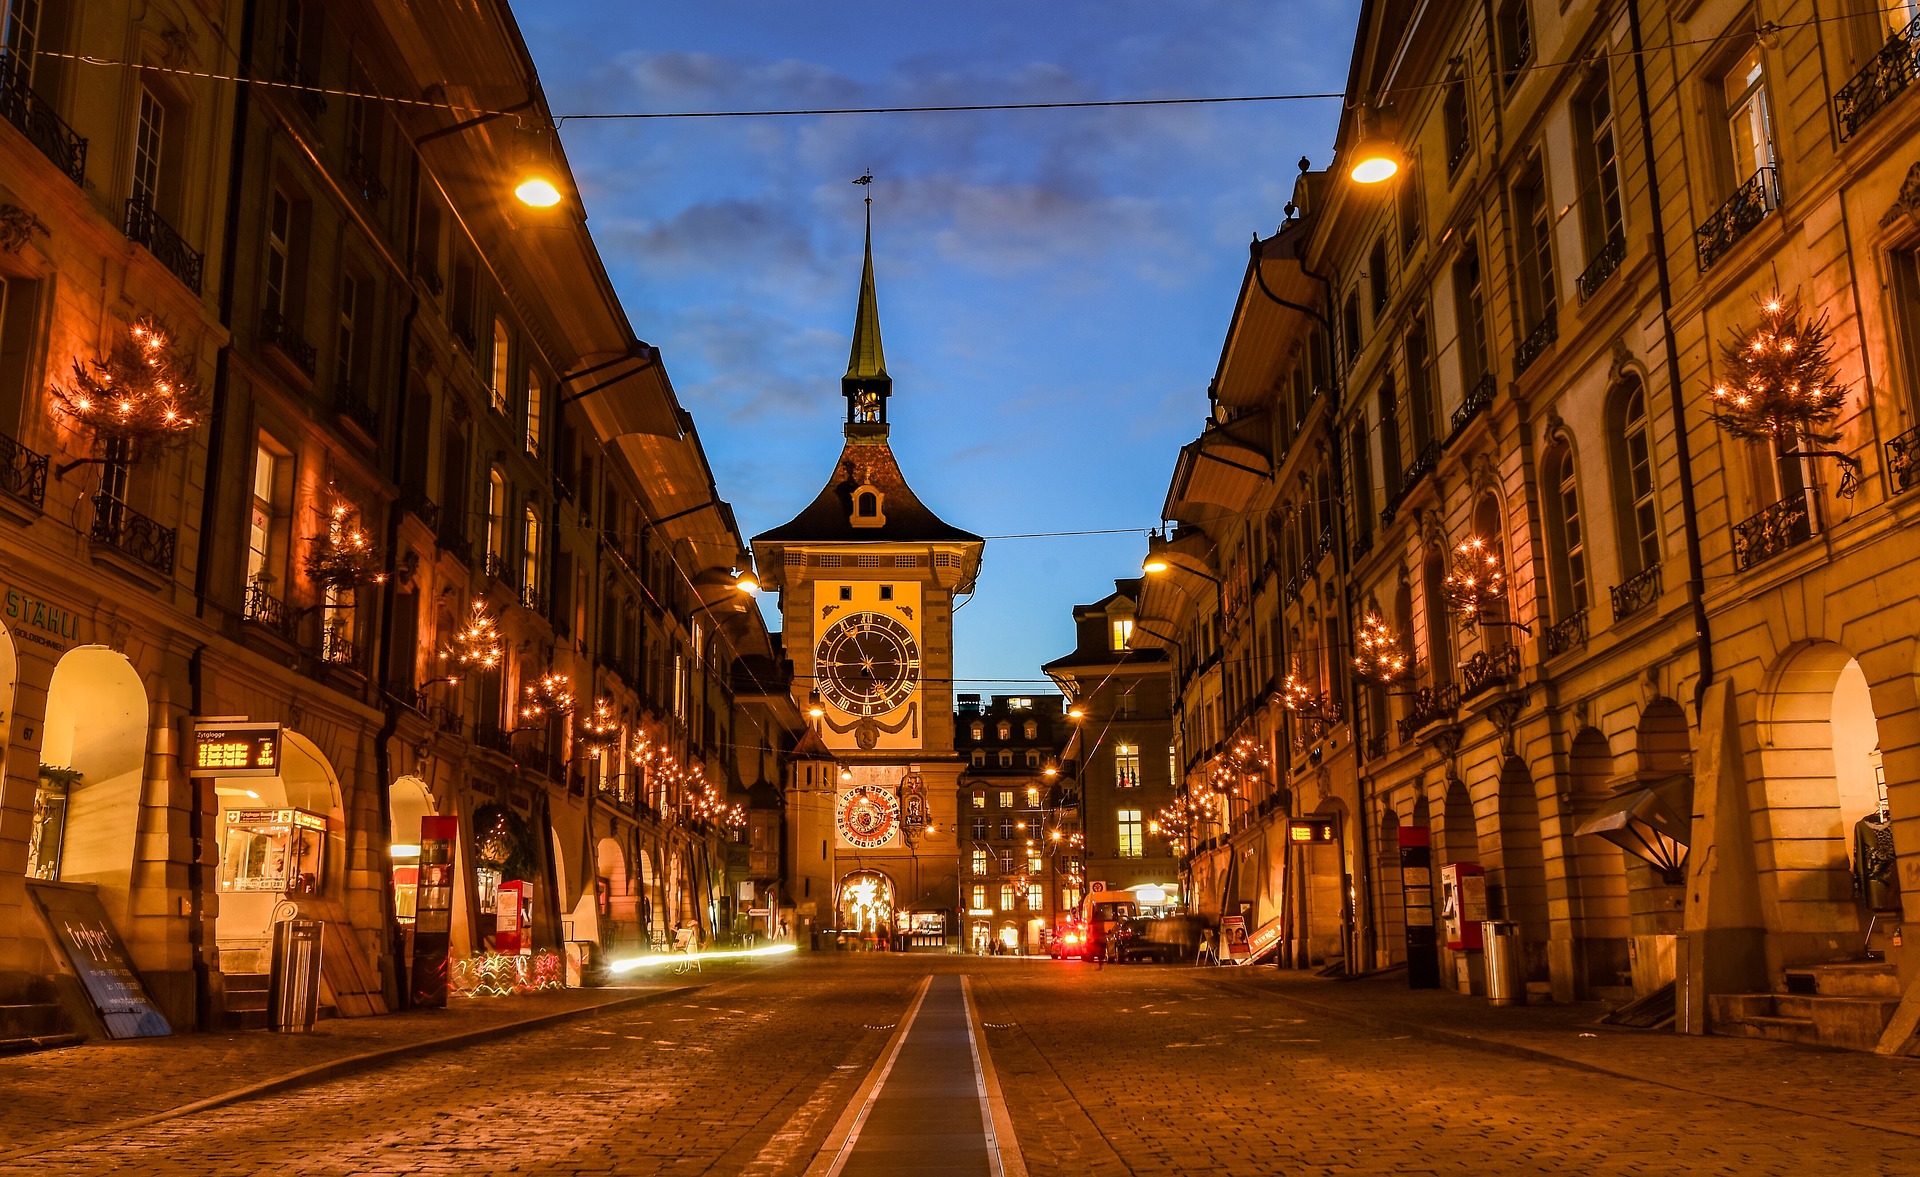 أين تذهب في عاصمة سويسرا؟ هذه هي أهم الأماكن السياحية في برن